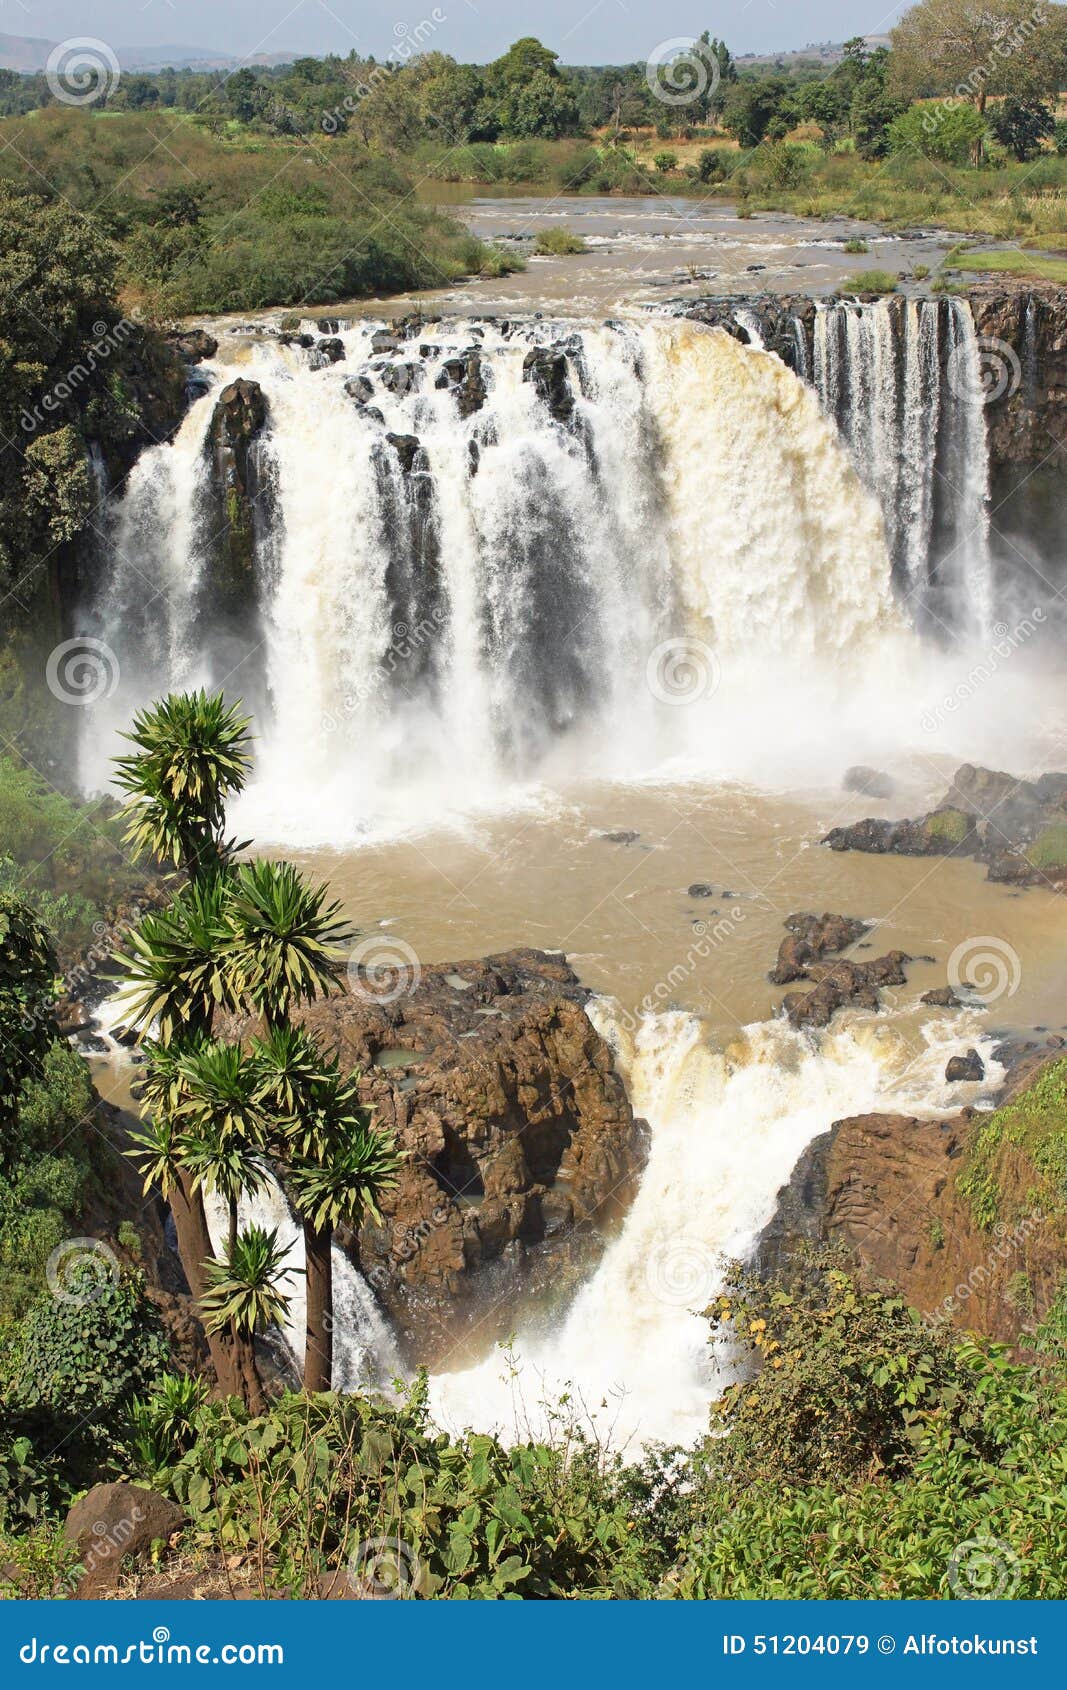 blue nile falls, bahar dar, ethiopia